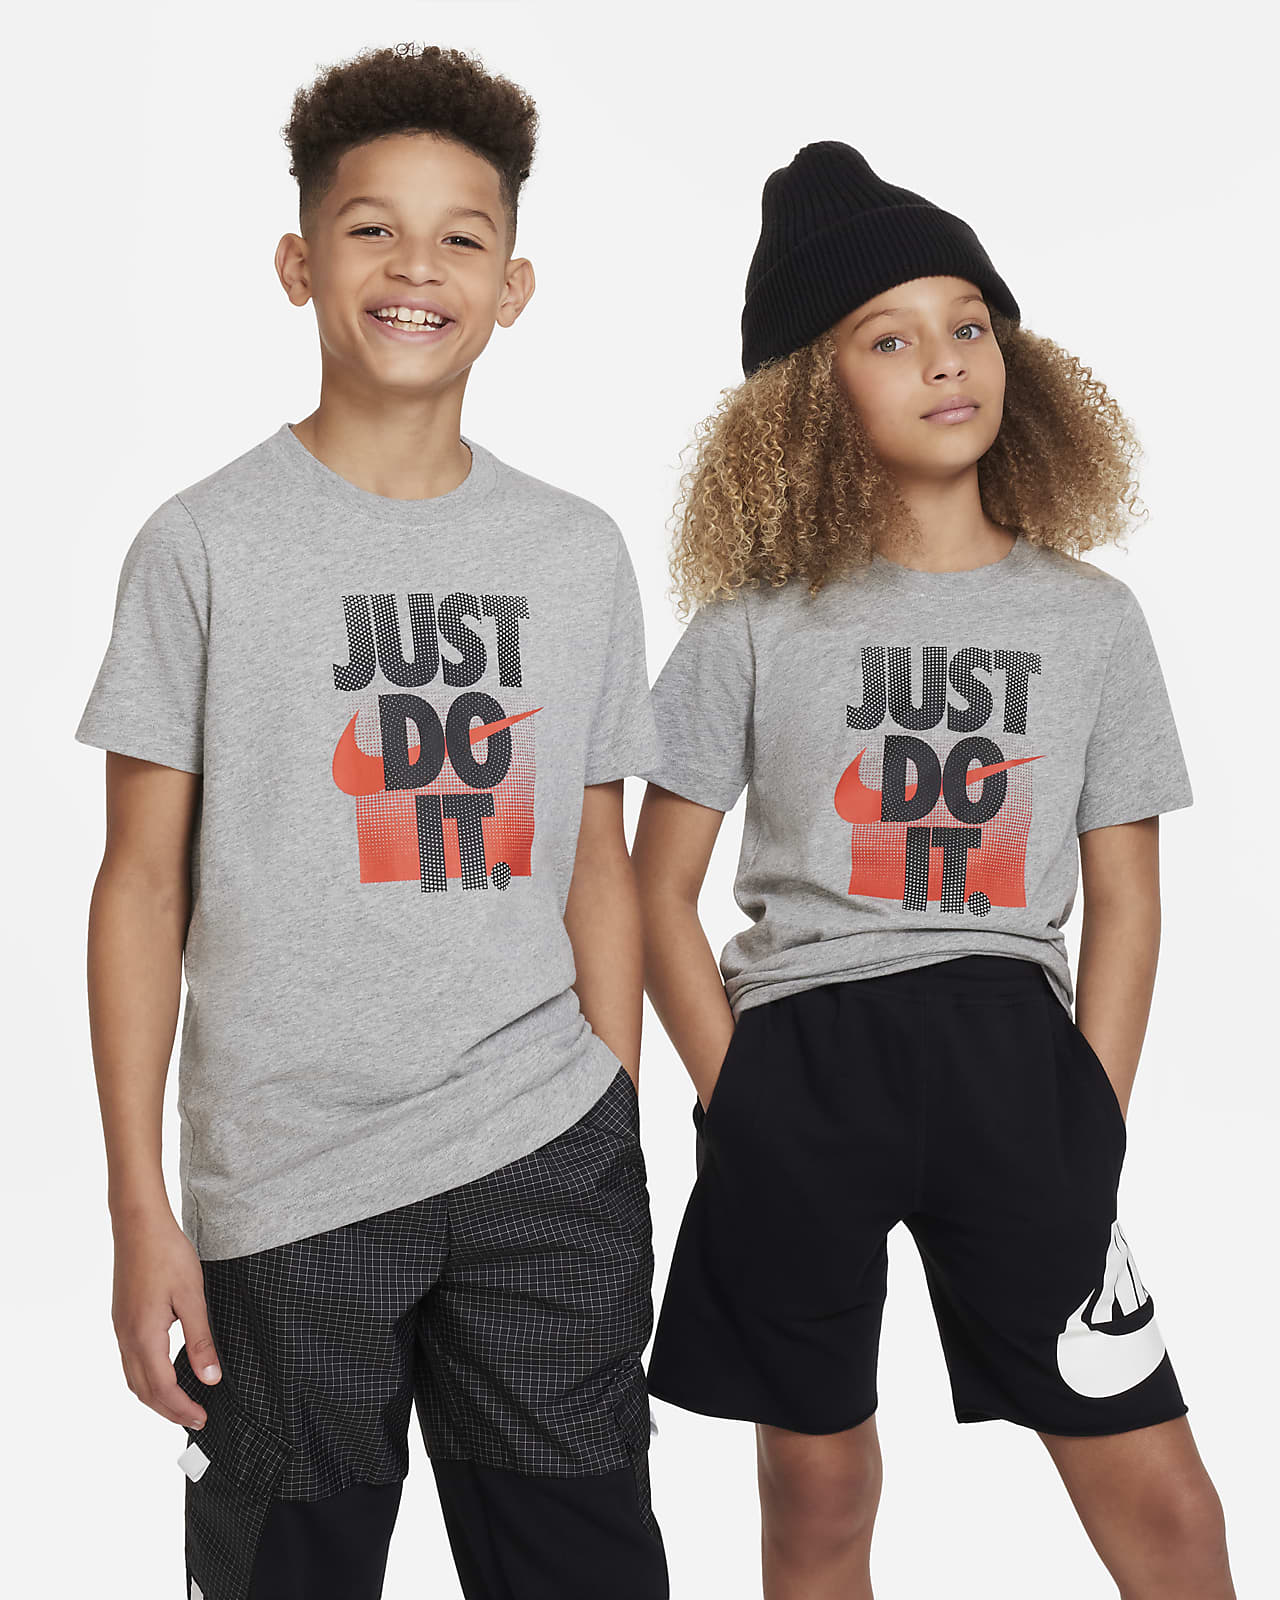 T-Shirt Nike Sportswear για μεγάλα παιδιά